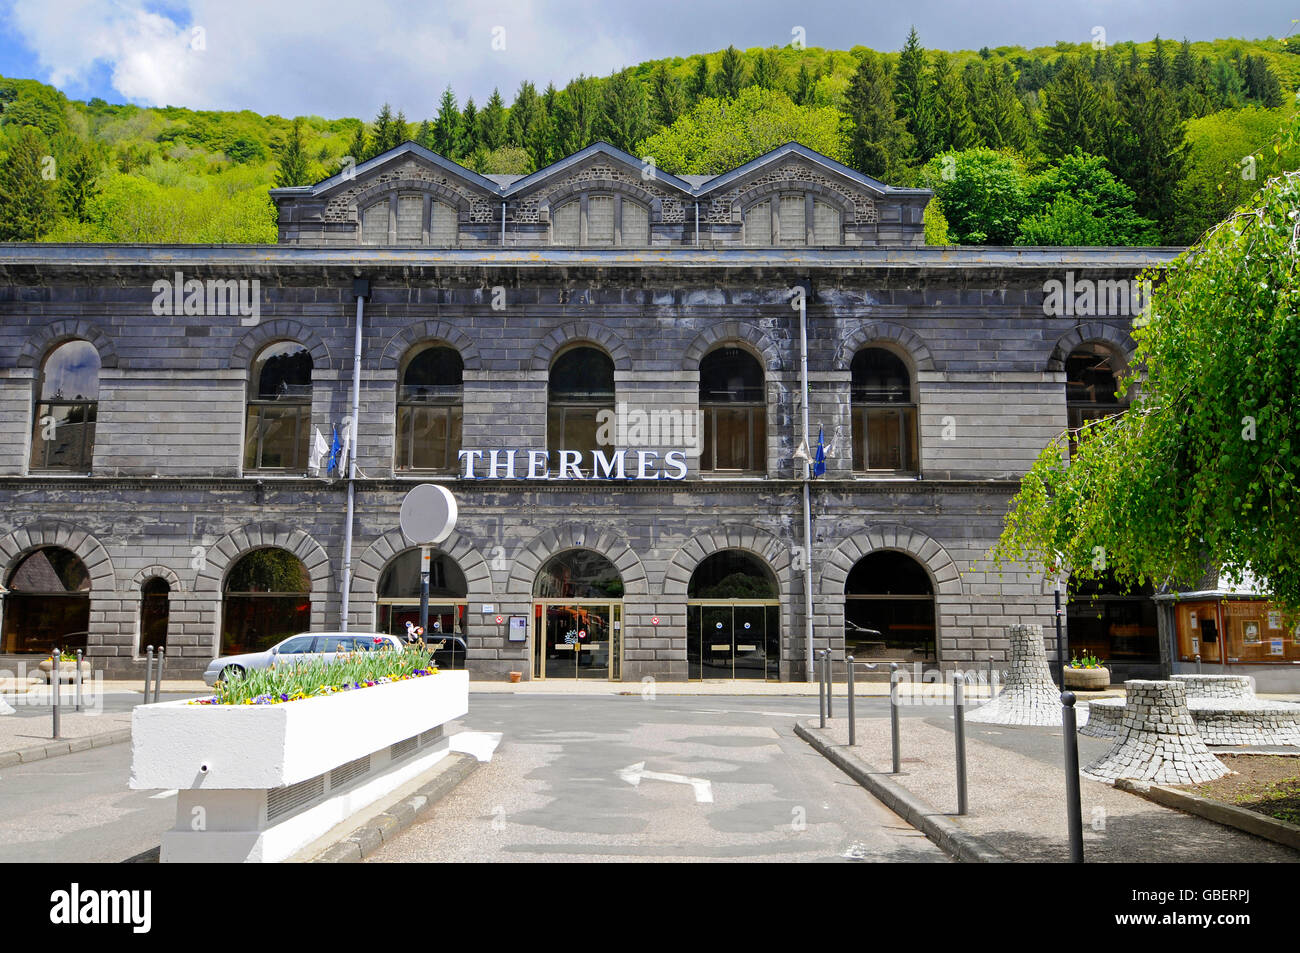 Aguas termales, Mont-Dore, Departement Puy-de-Dome, Auvergne, Francia / Thermes Foto de stock